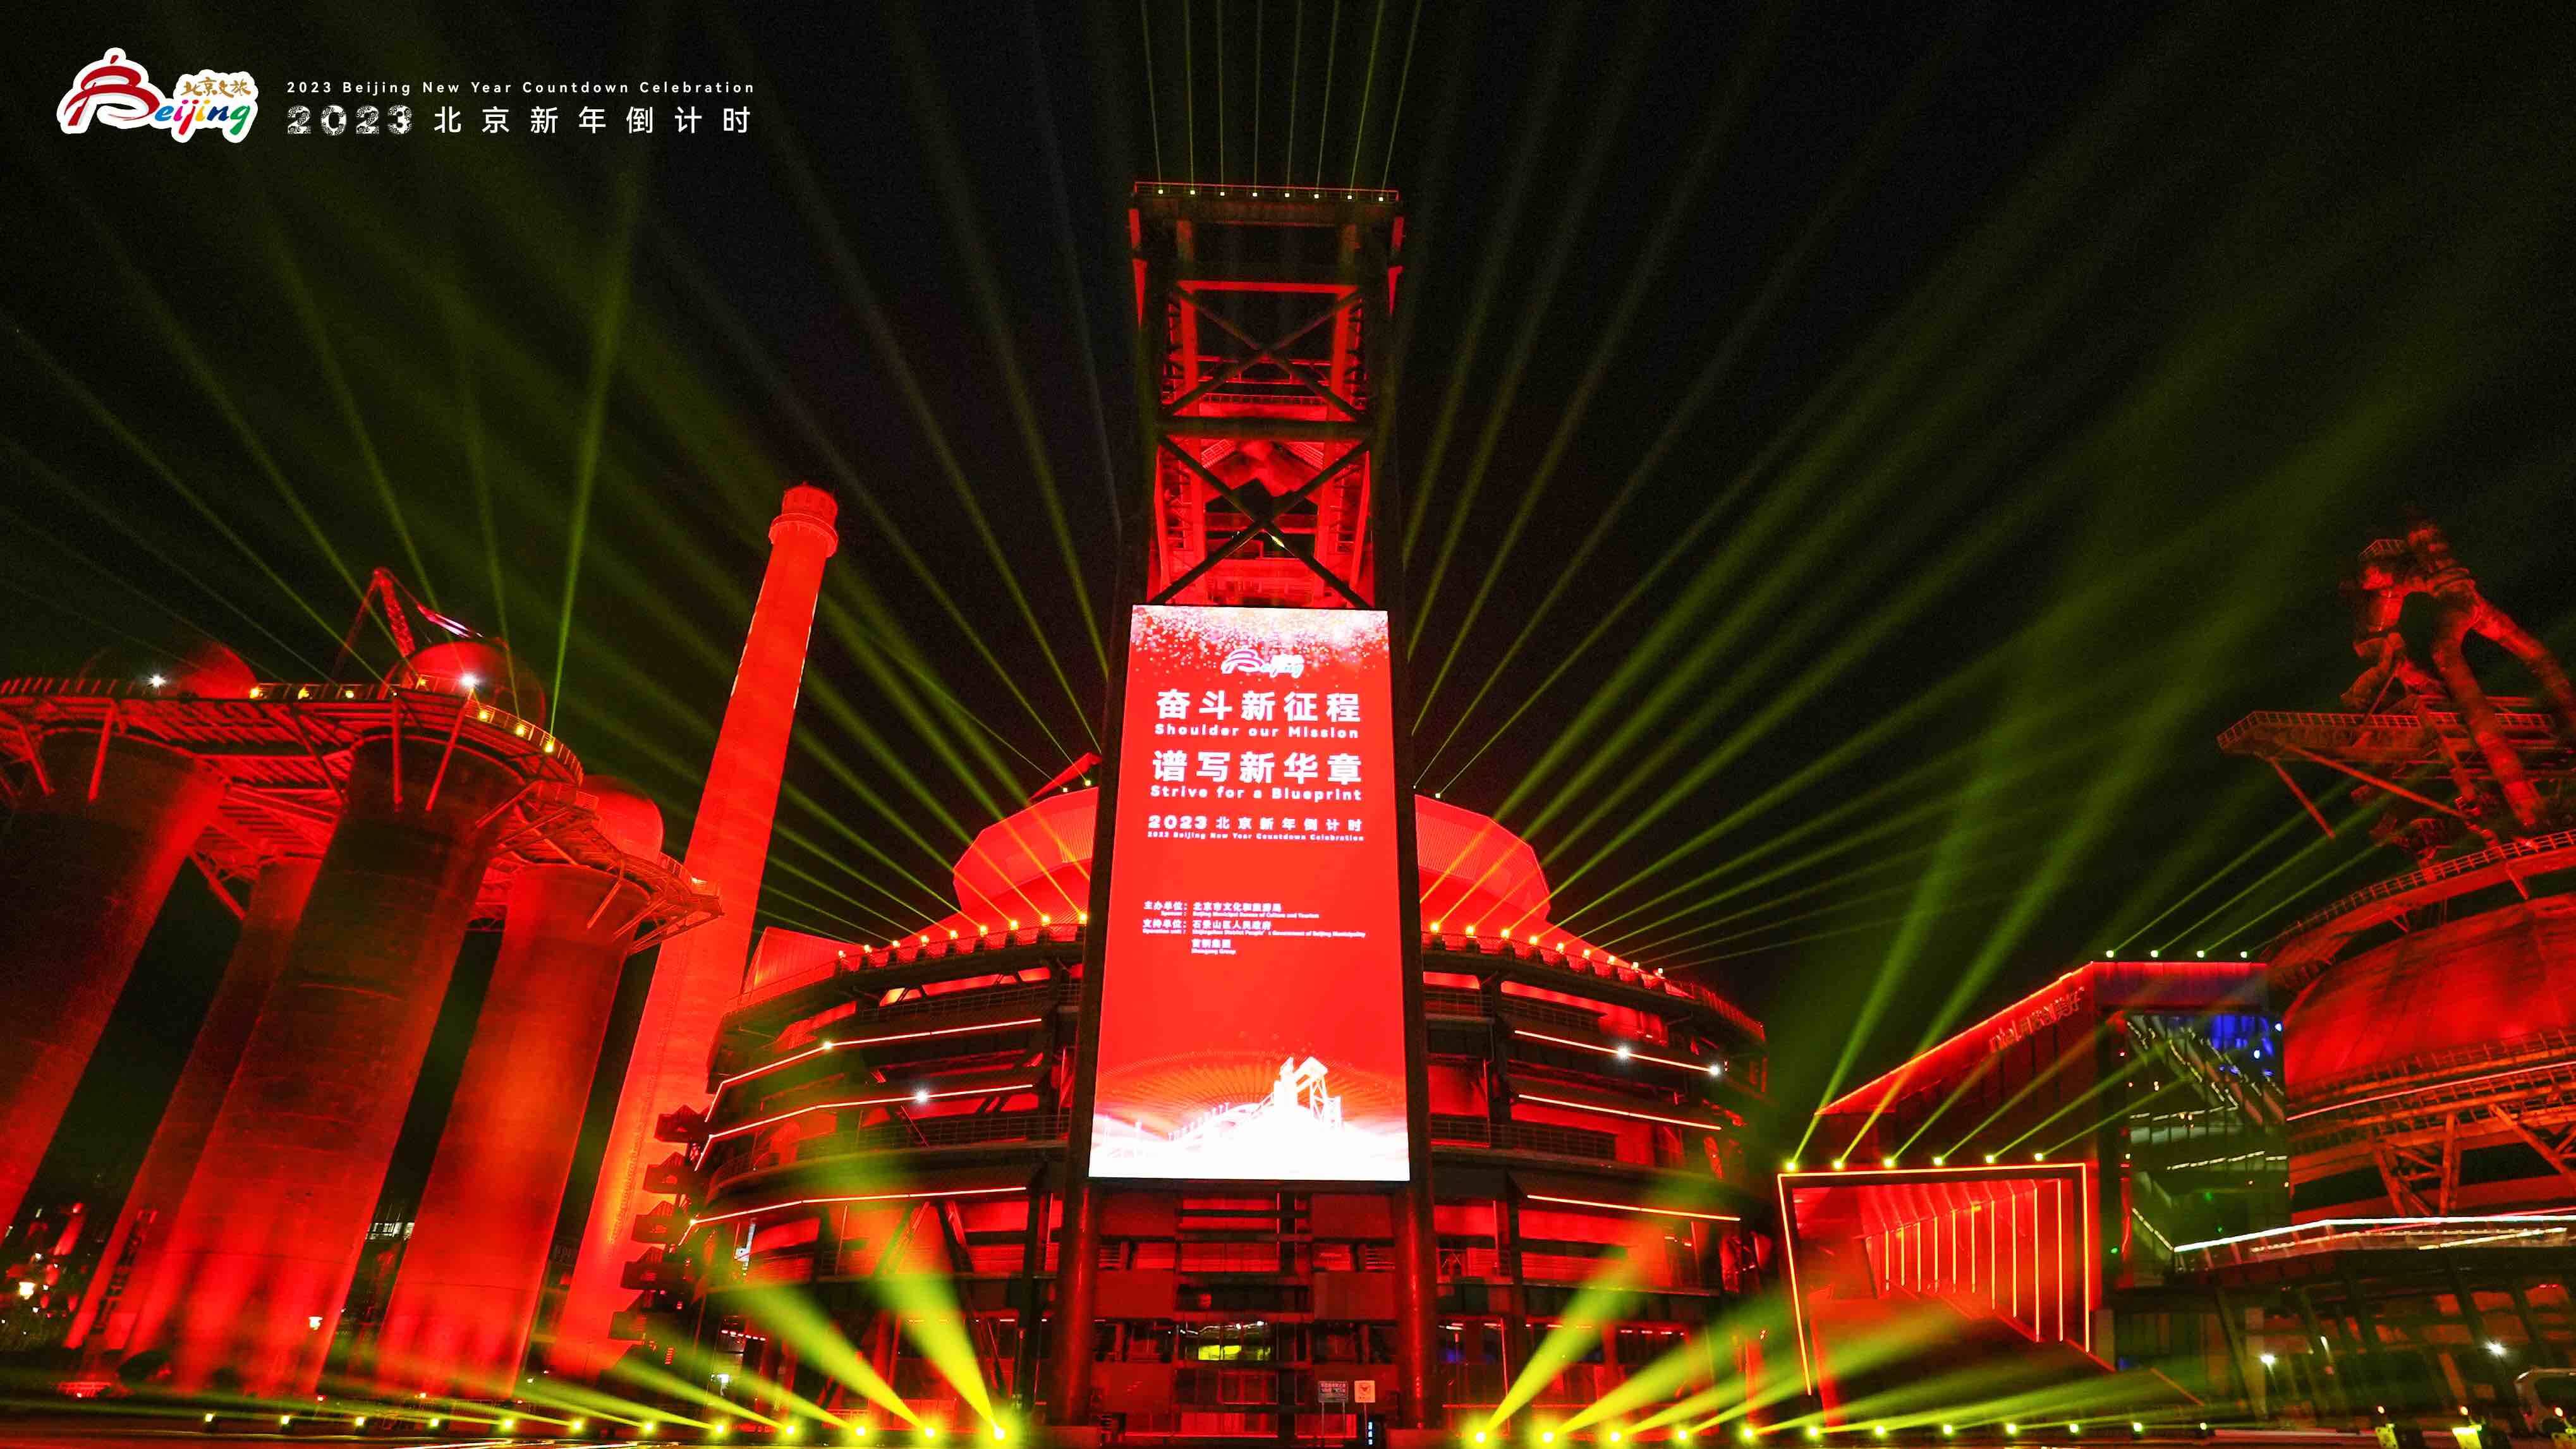 奋斗新征程 谱写新华章  2023北京新年倒计时活动在首钢园举办